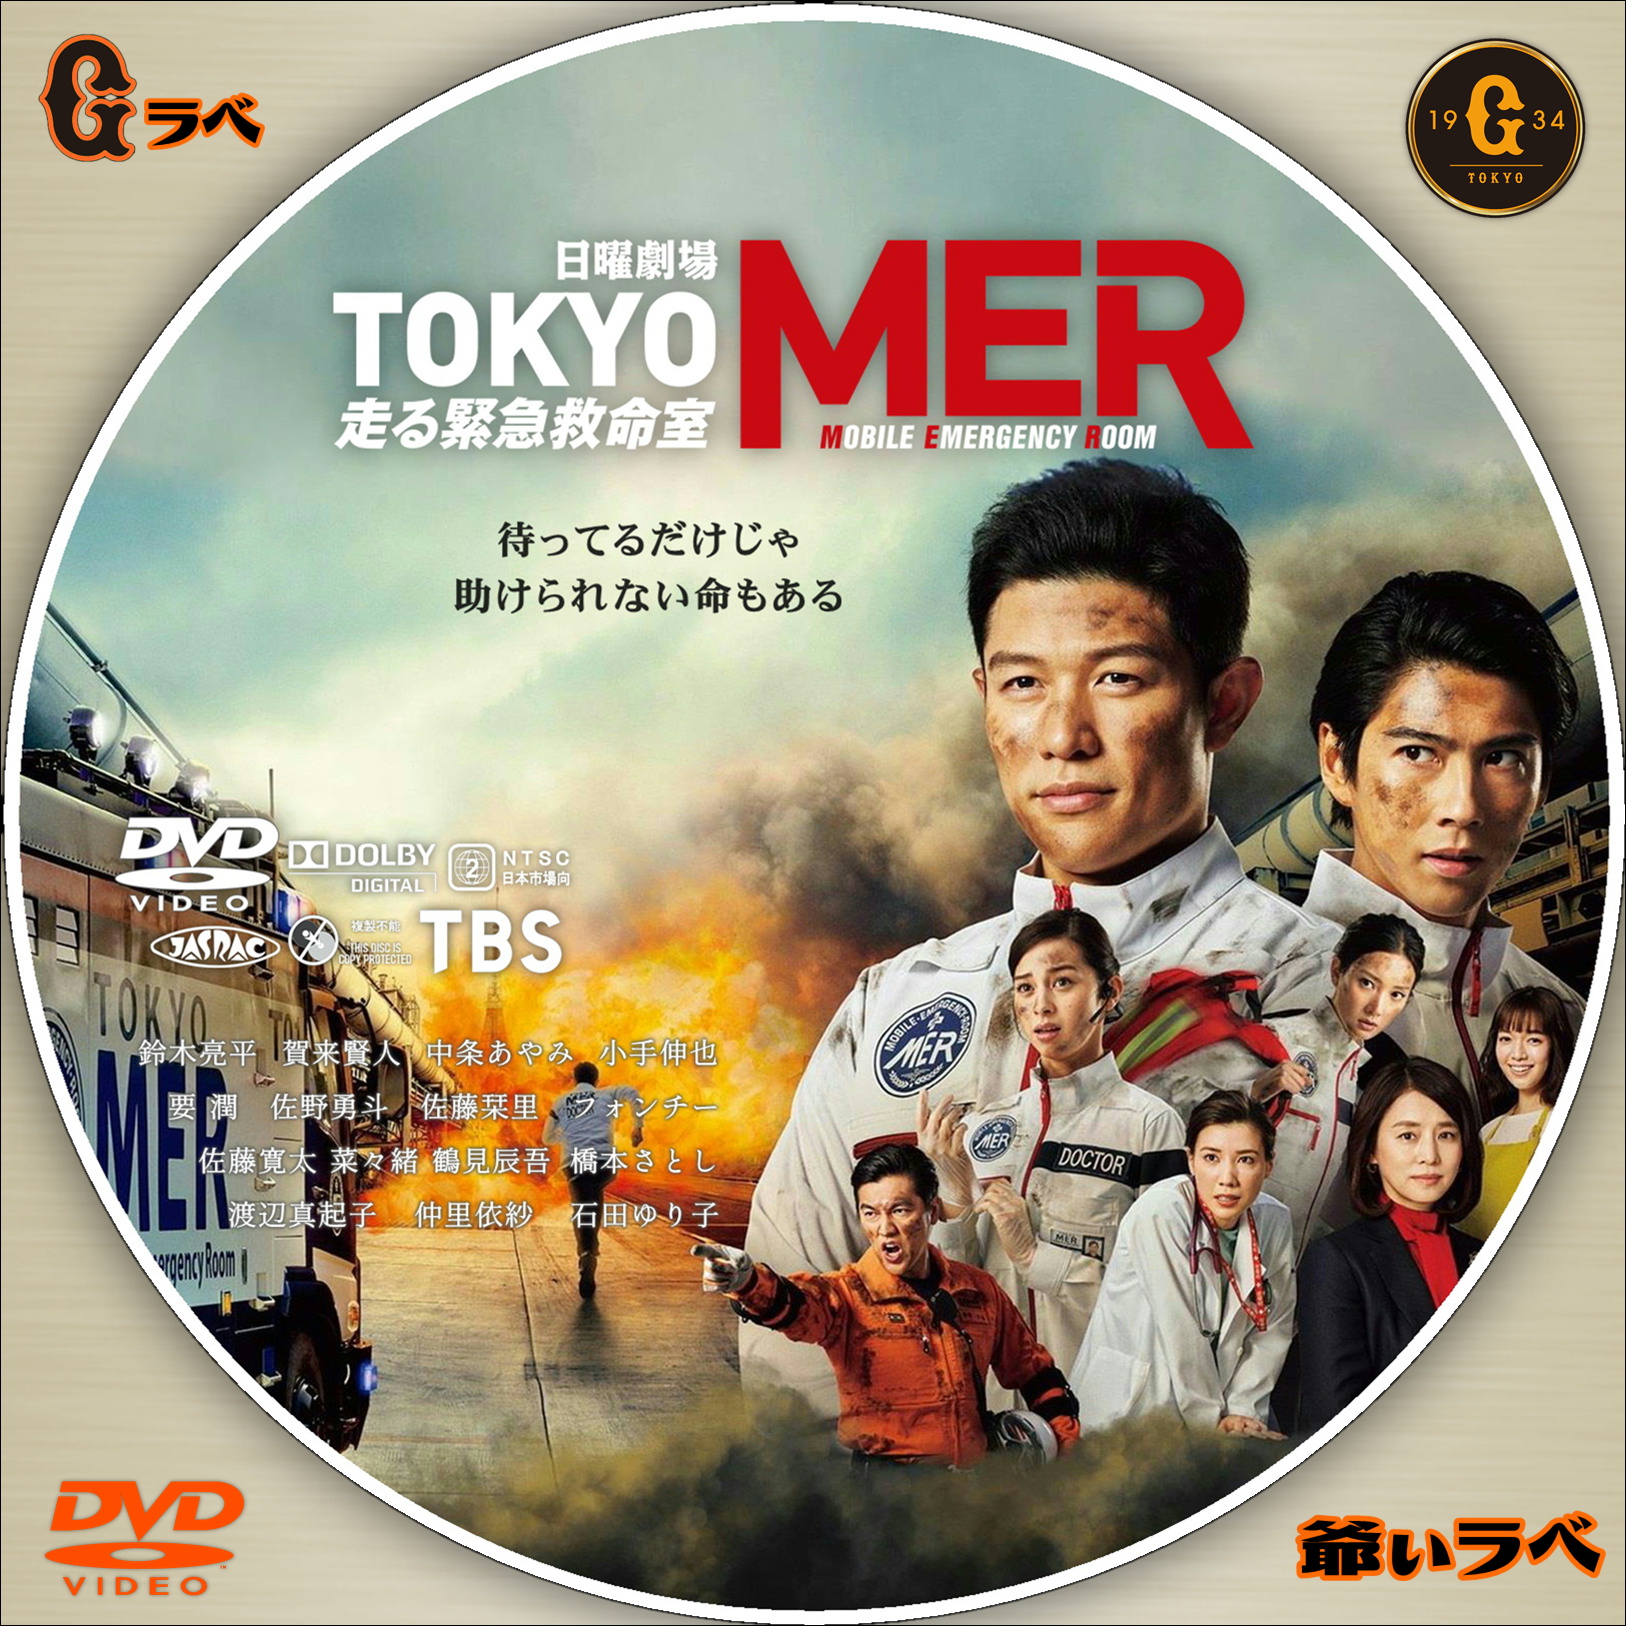 本店 東京 TOKYO MER~走る緊急救命室~ DVD-BOX 新品 鈴木亮平 agglo